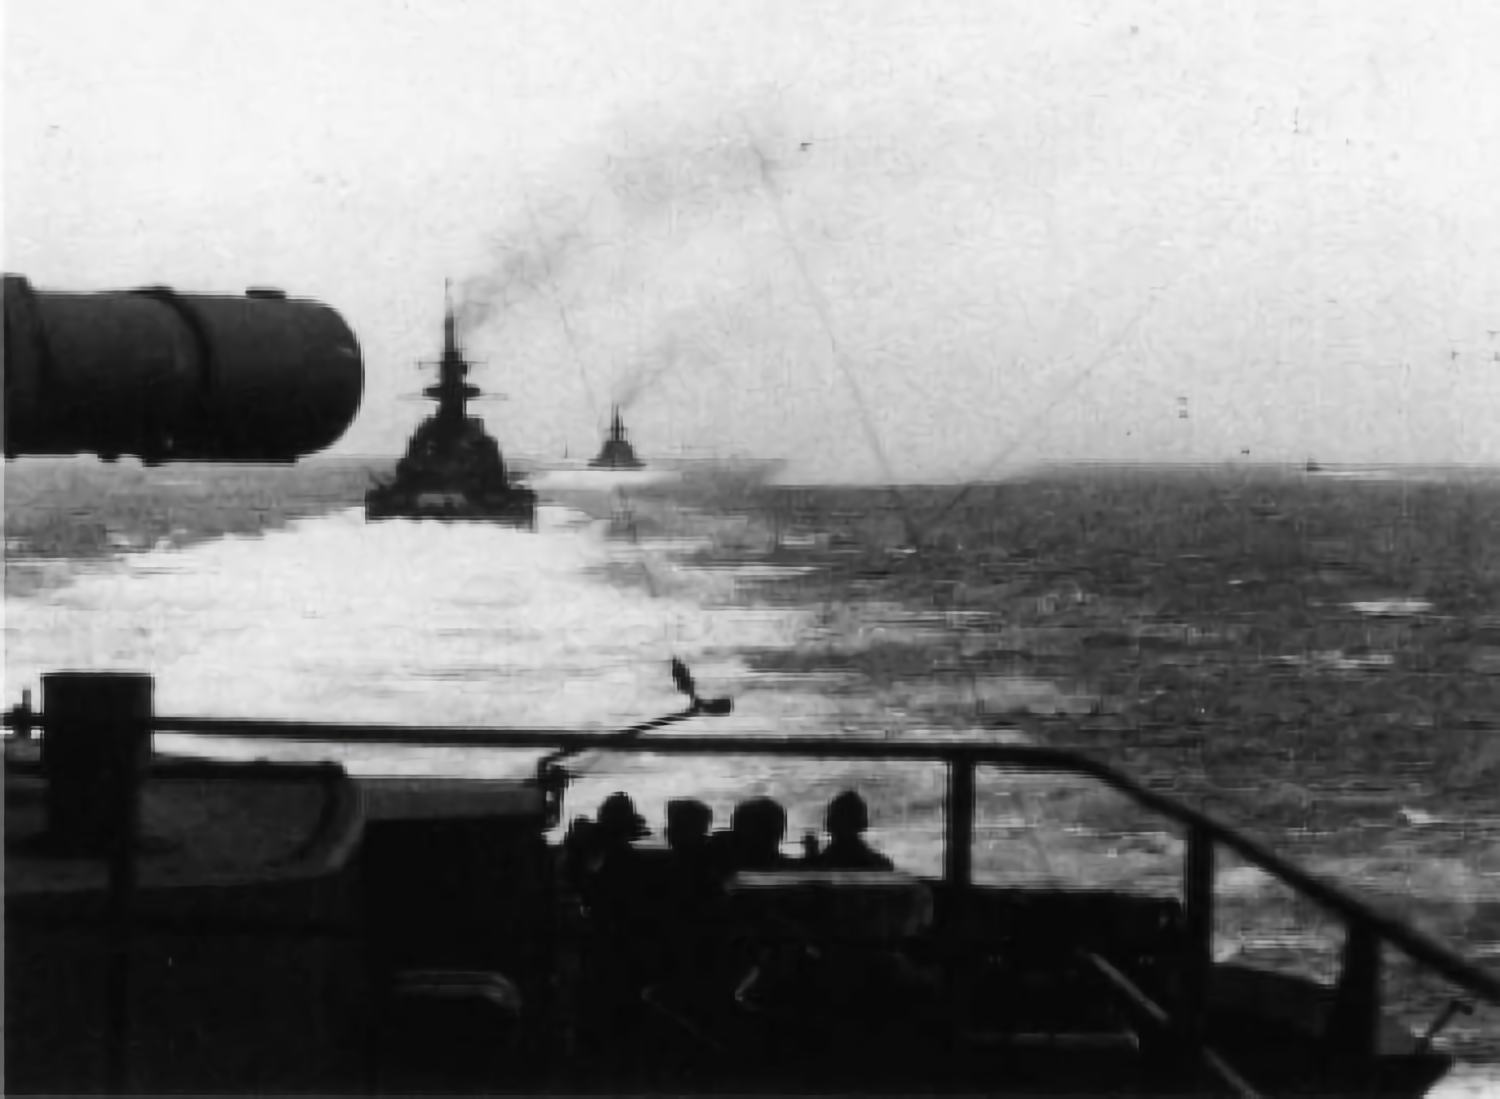 Foto tomada desde el “Prinz Eugen”, lidera el “Scharnorst”, seguido por el “Gneisenau”.